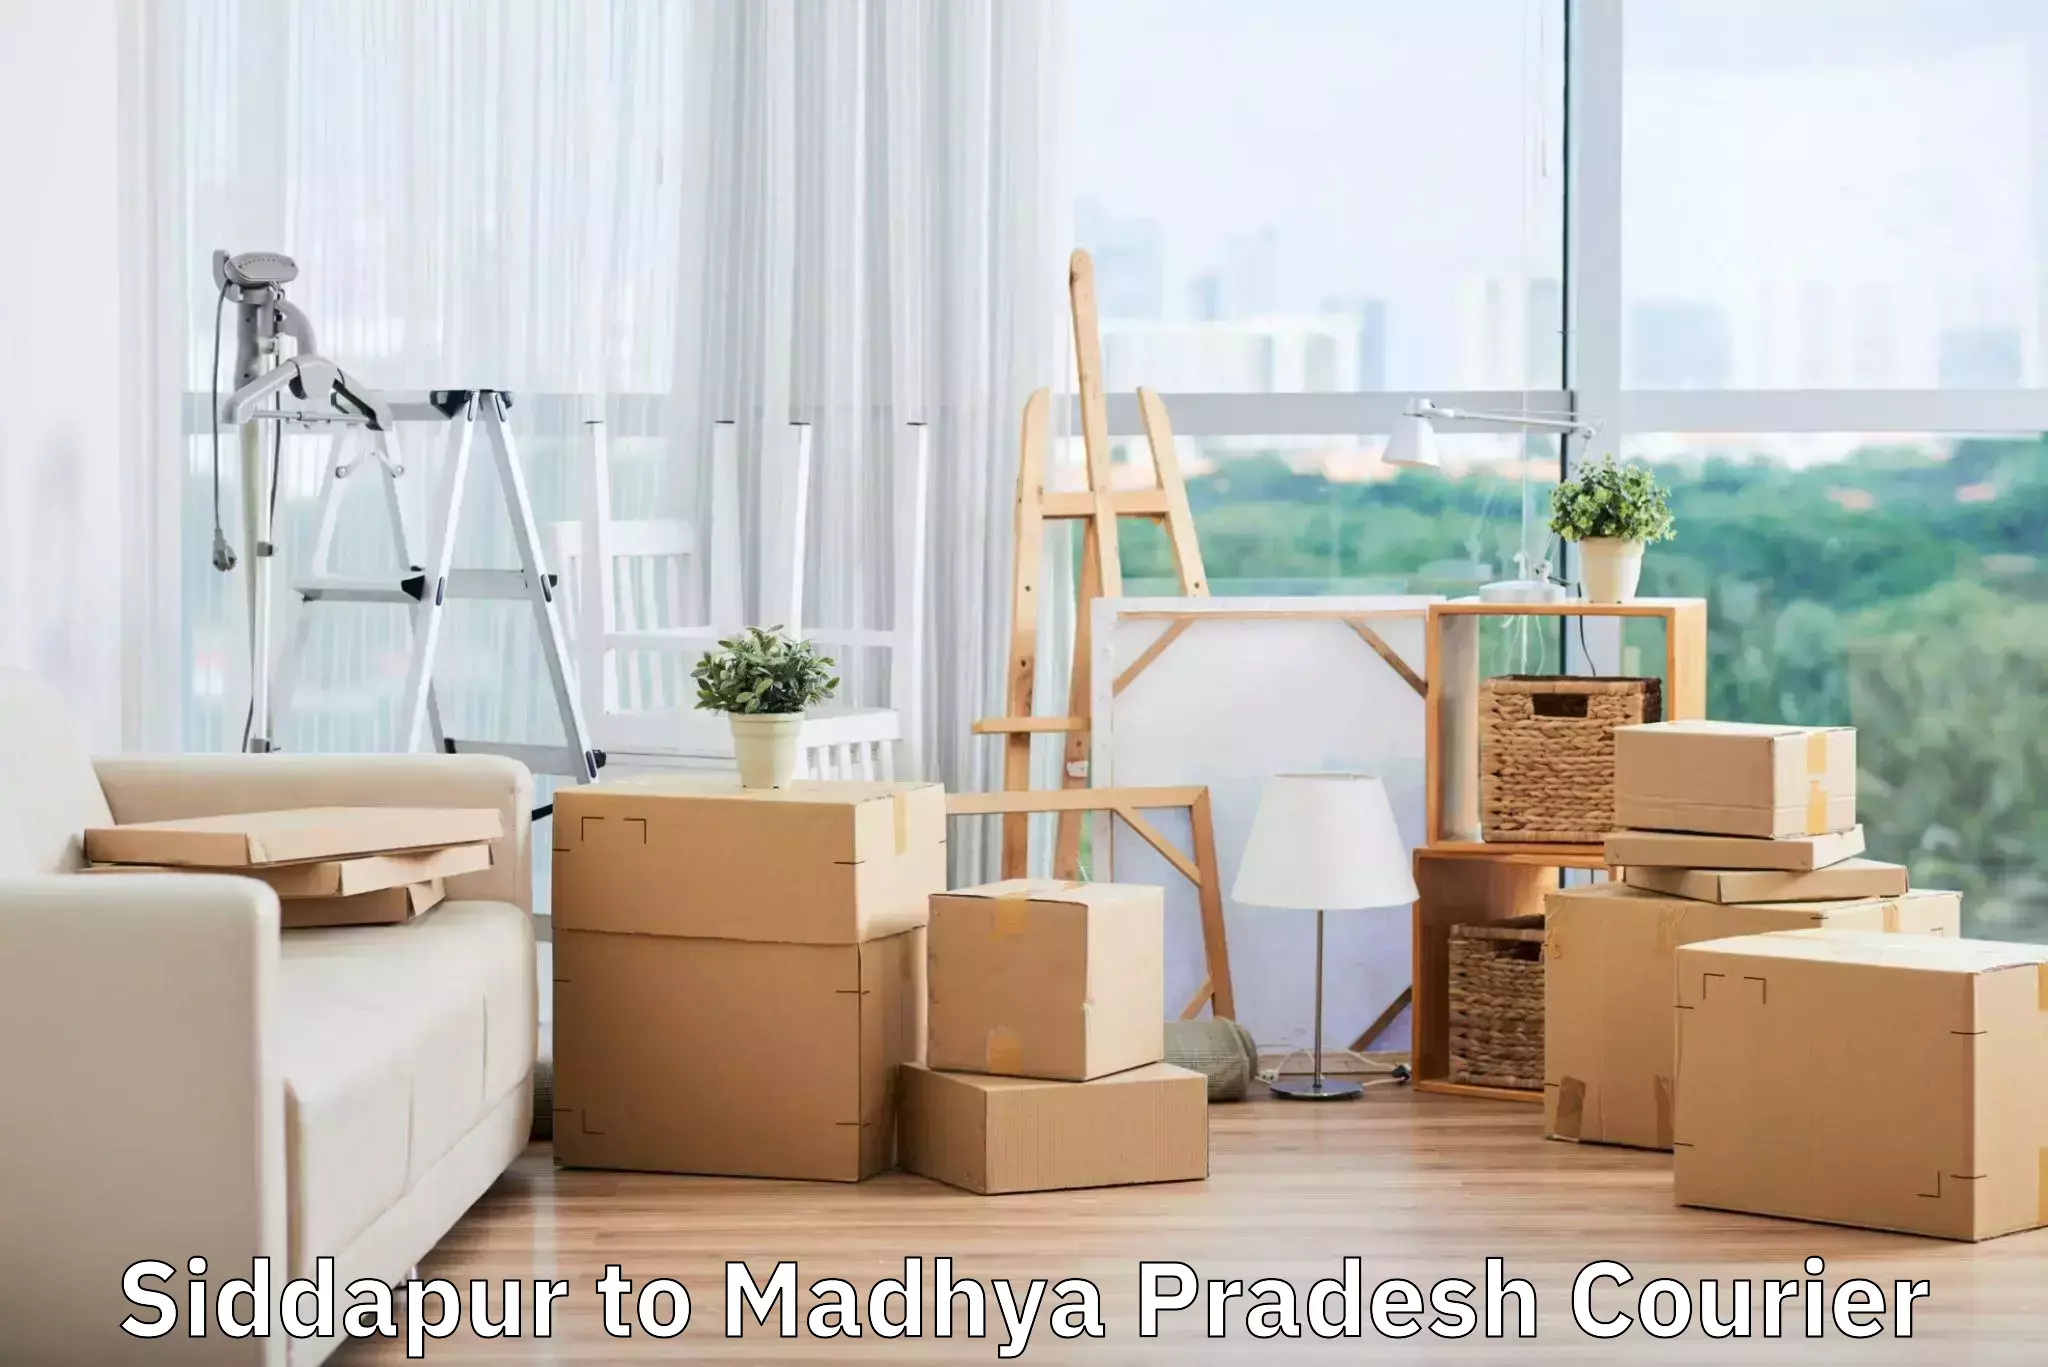 Baggage shipping experts Siddapur to Madhya Pradesh